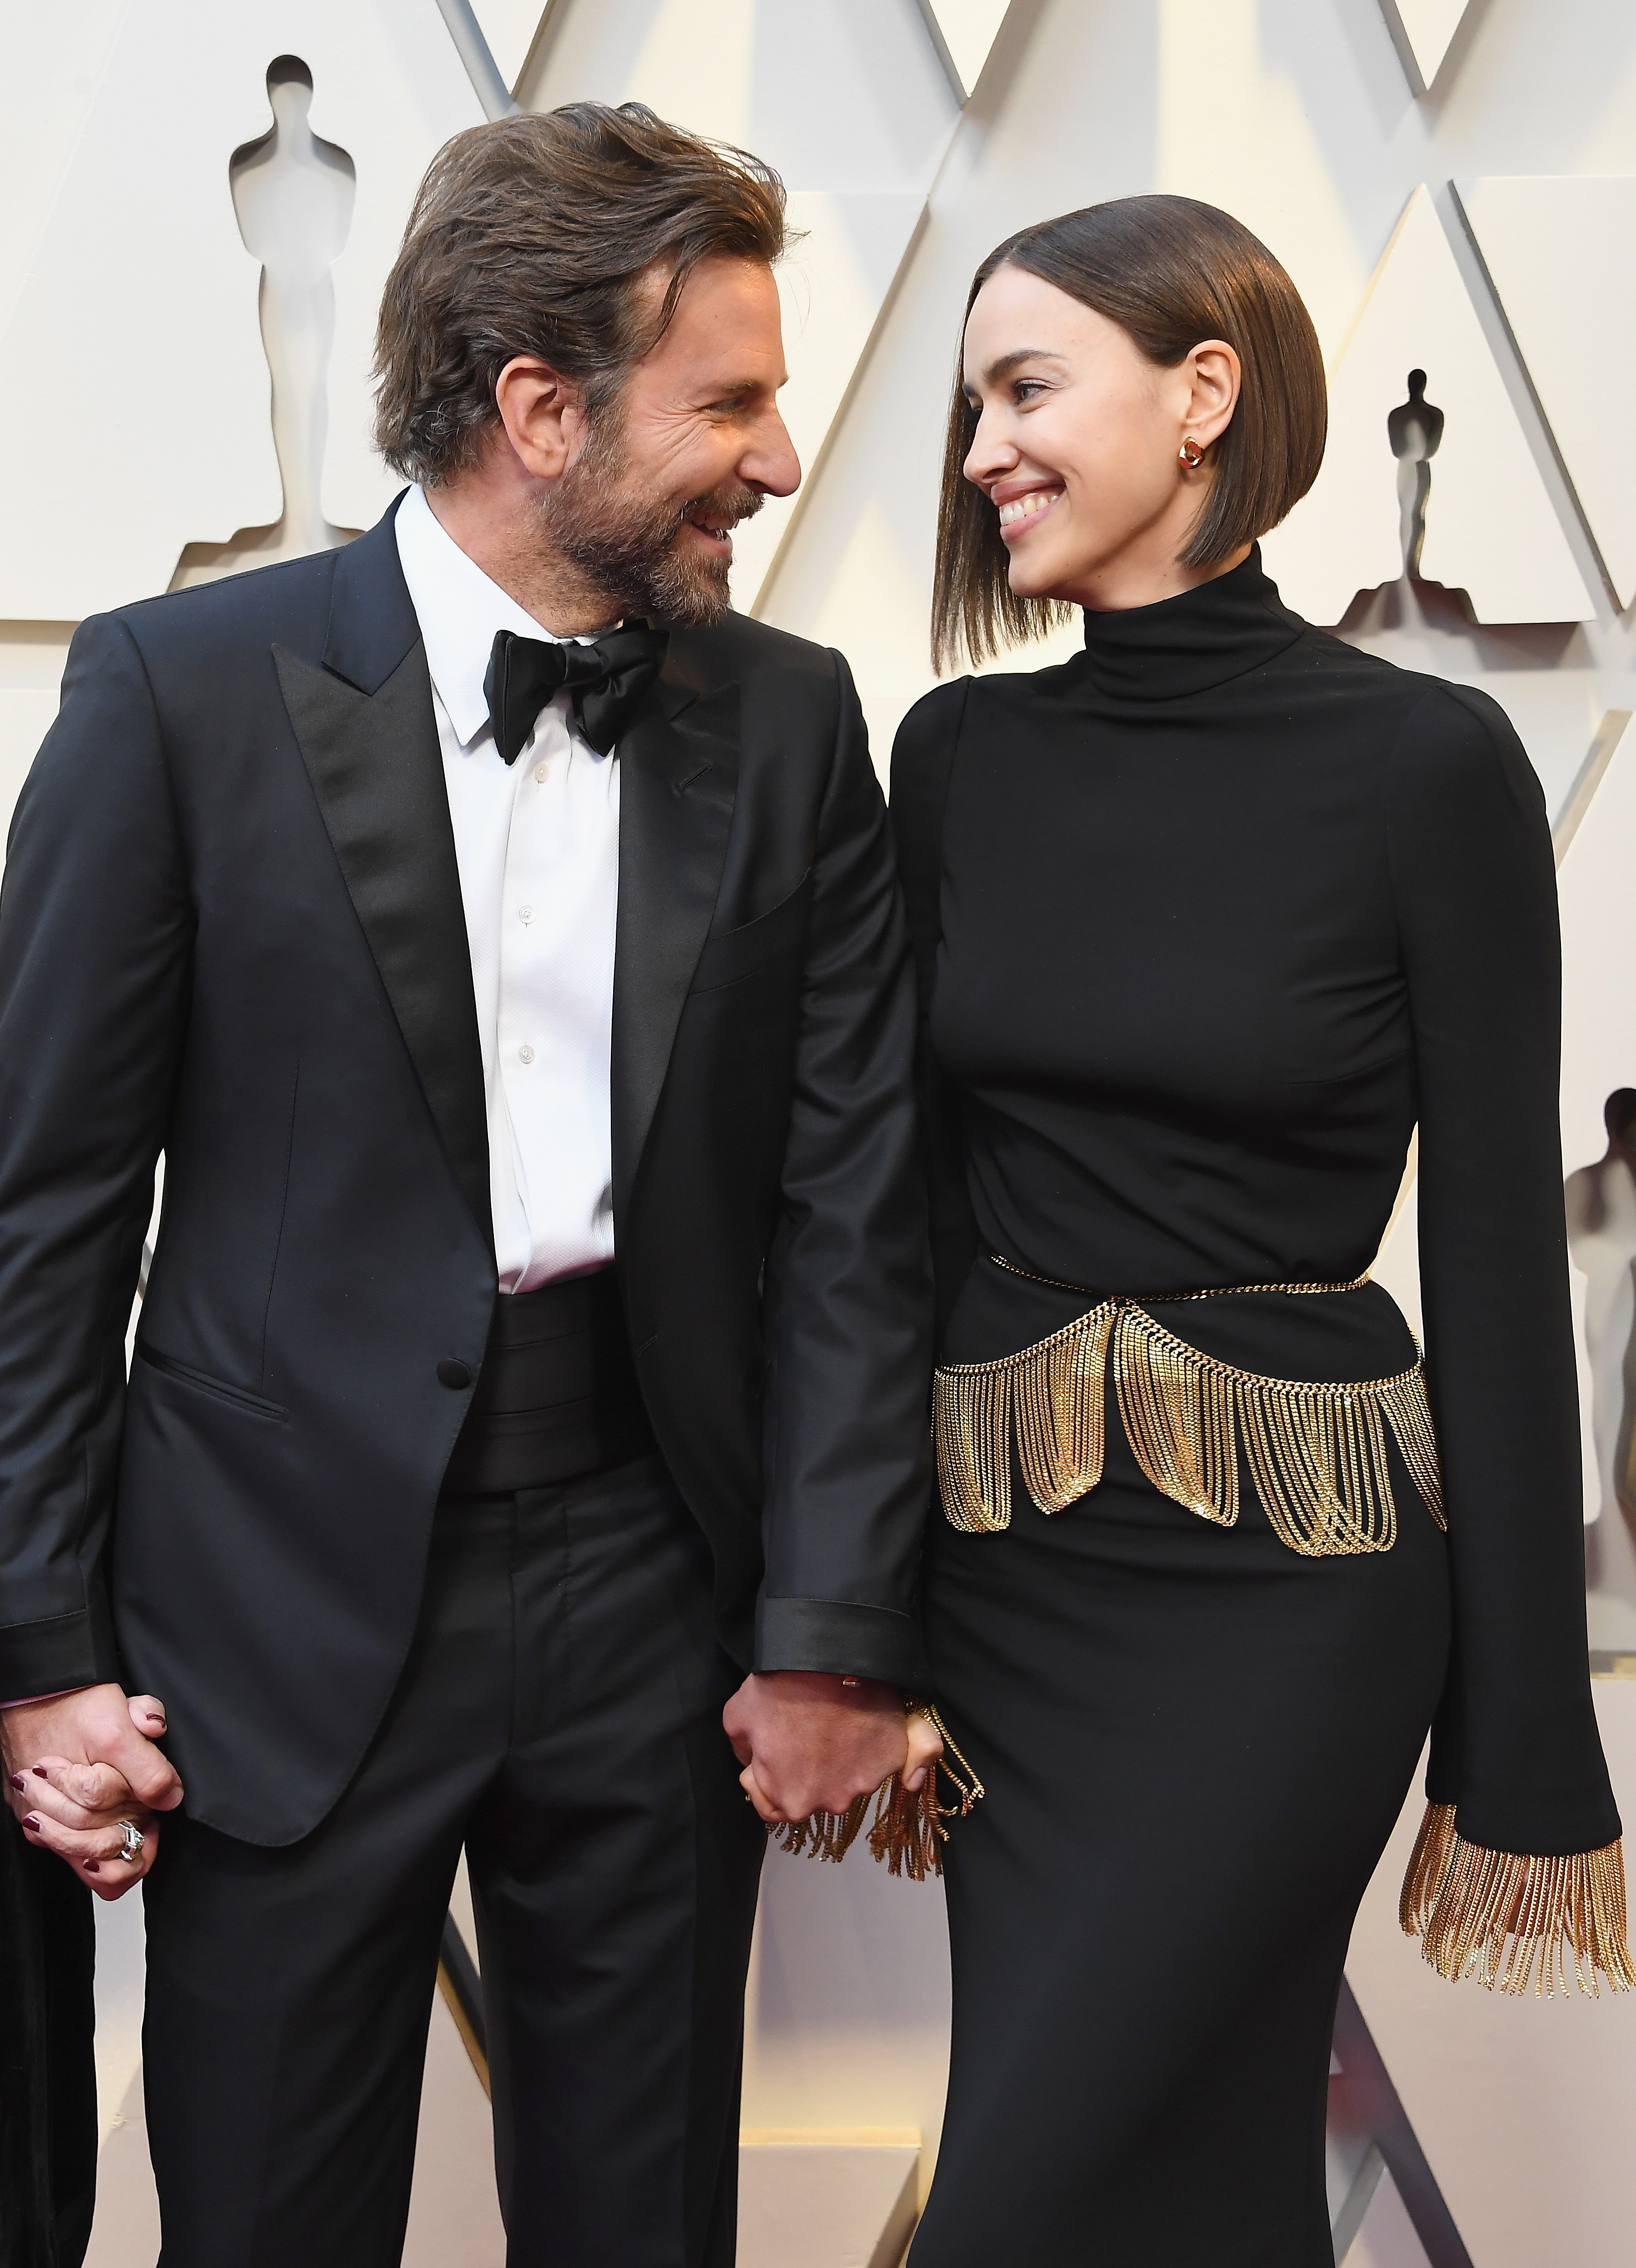 Bradley Cooper und Irina Shayk bei den 91st Annual Academy Awards in Hollywood, Kalifornien am 24. Februar 2019 | Quelle: Getty Images